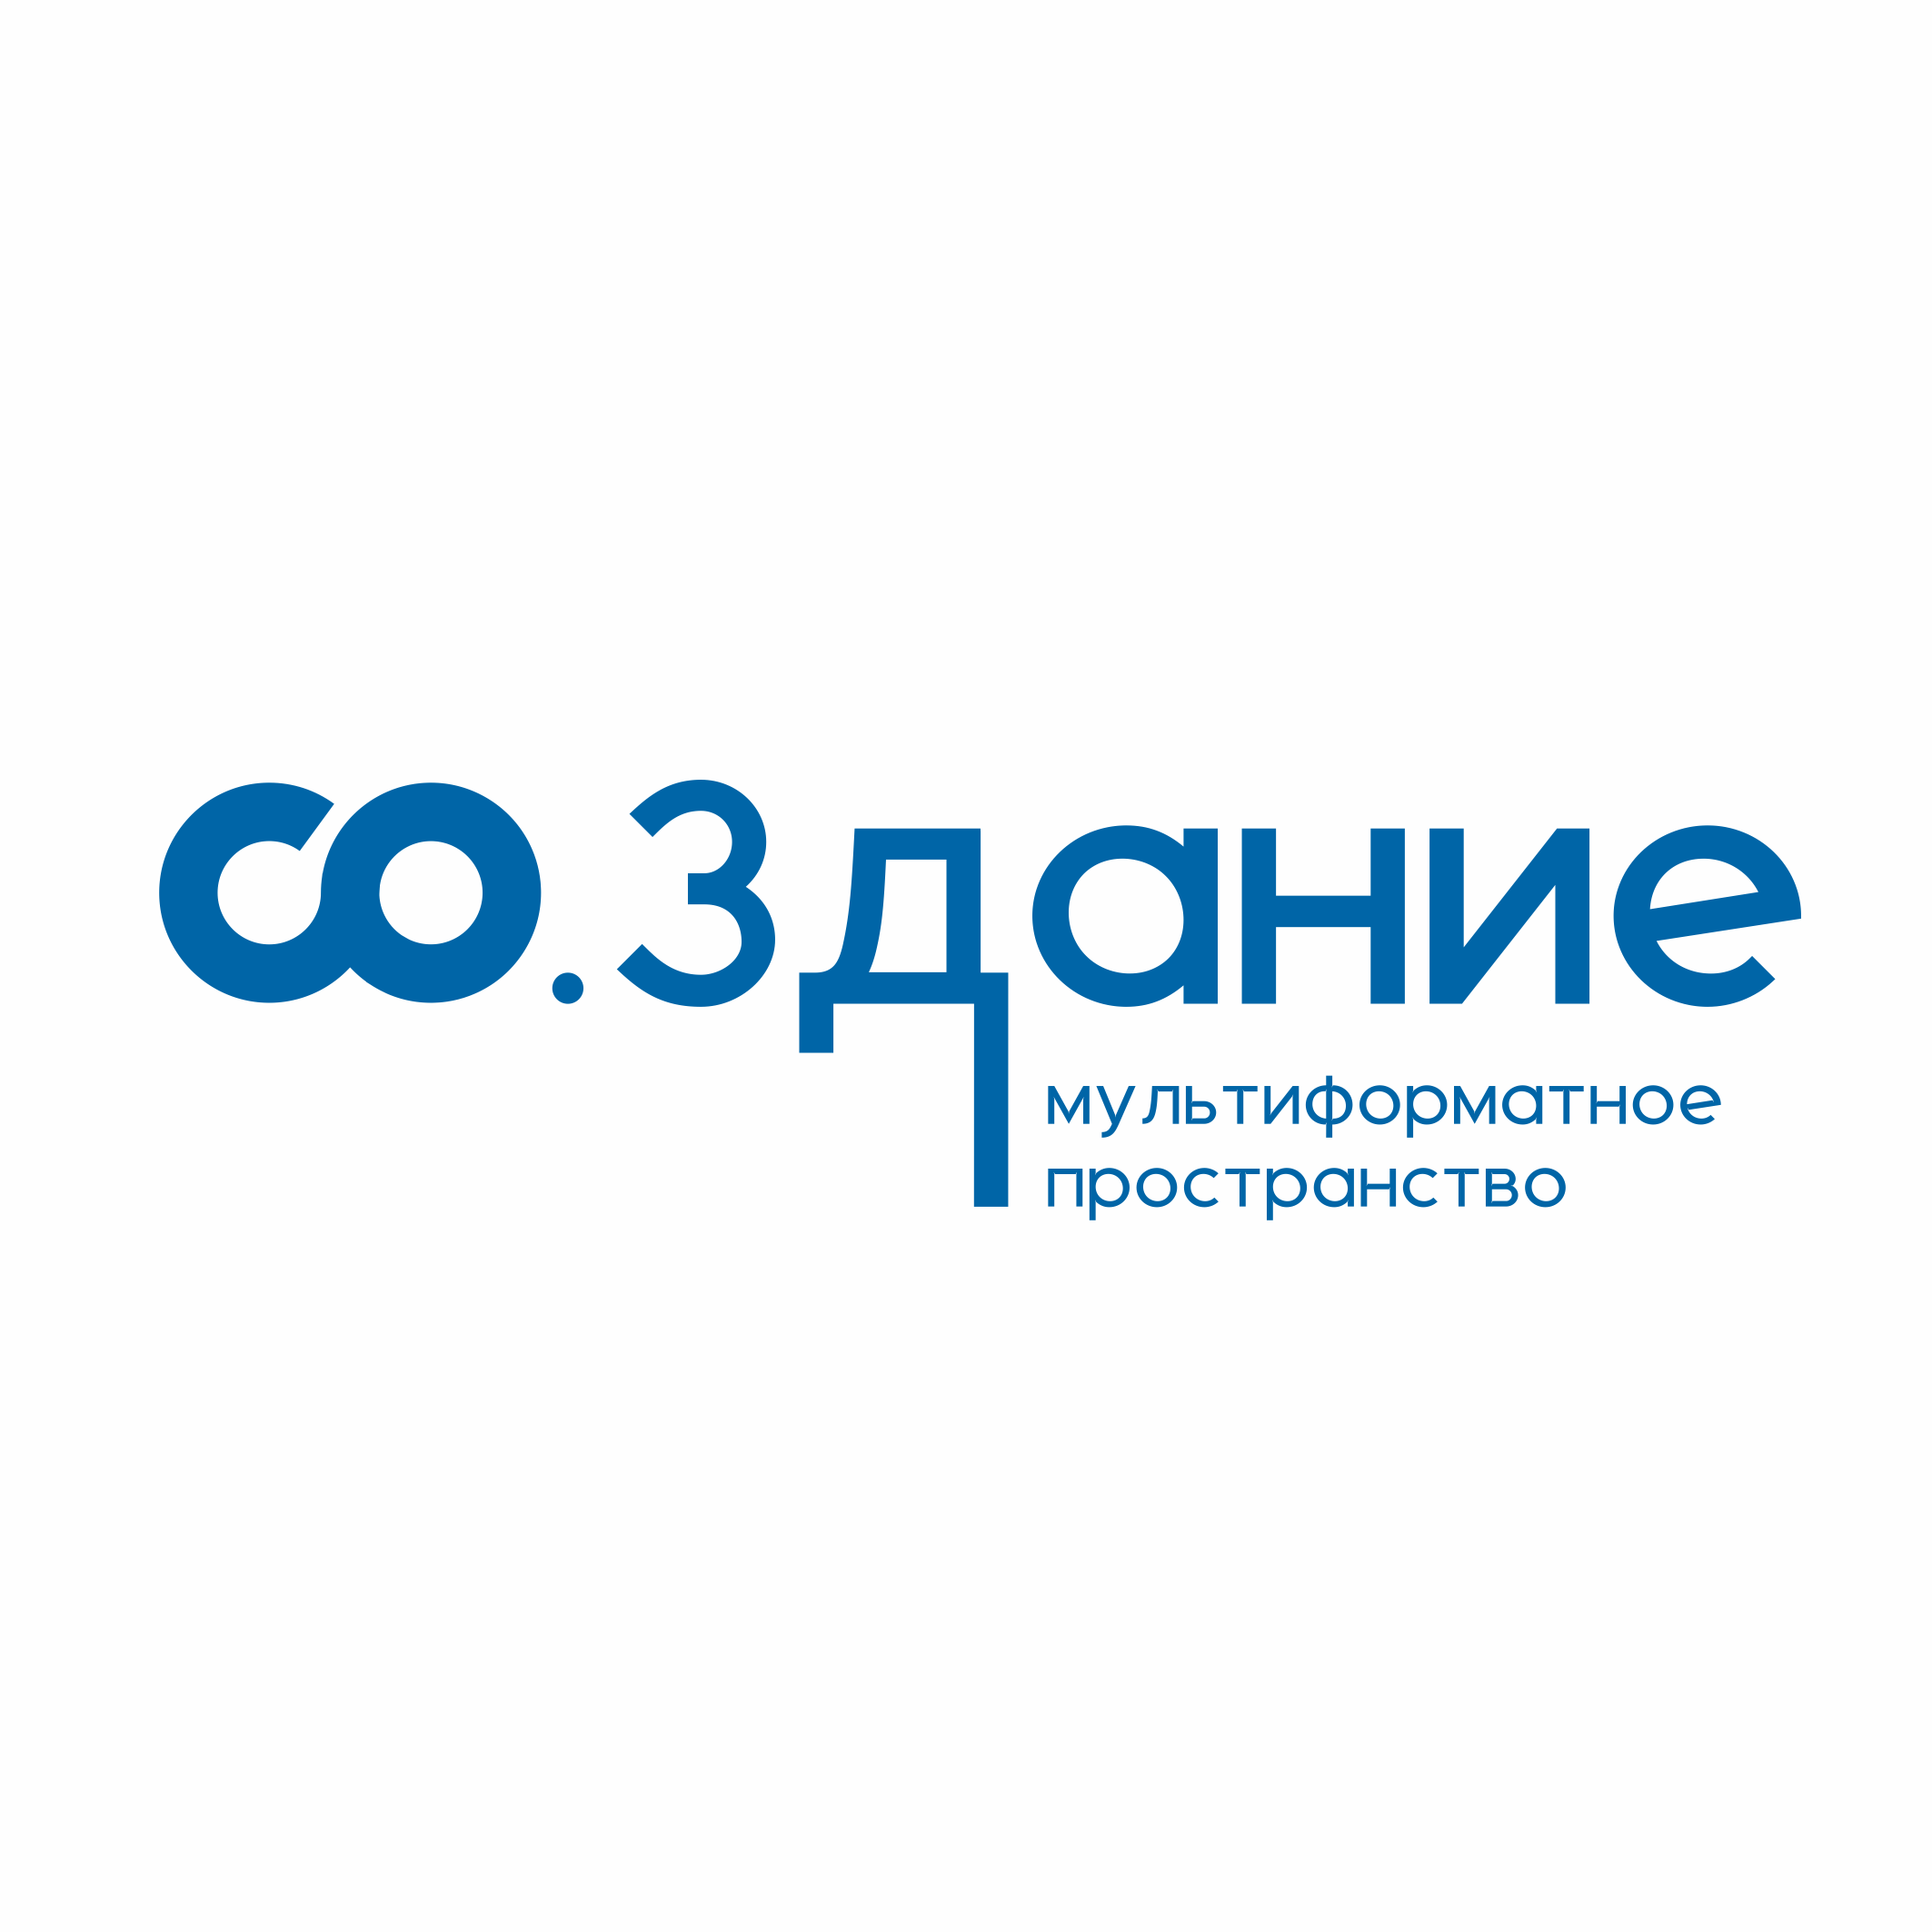 Логотип Мультиформатное пространство студенческих отрядов "СО.здание"